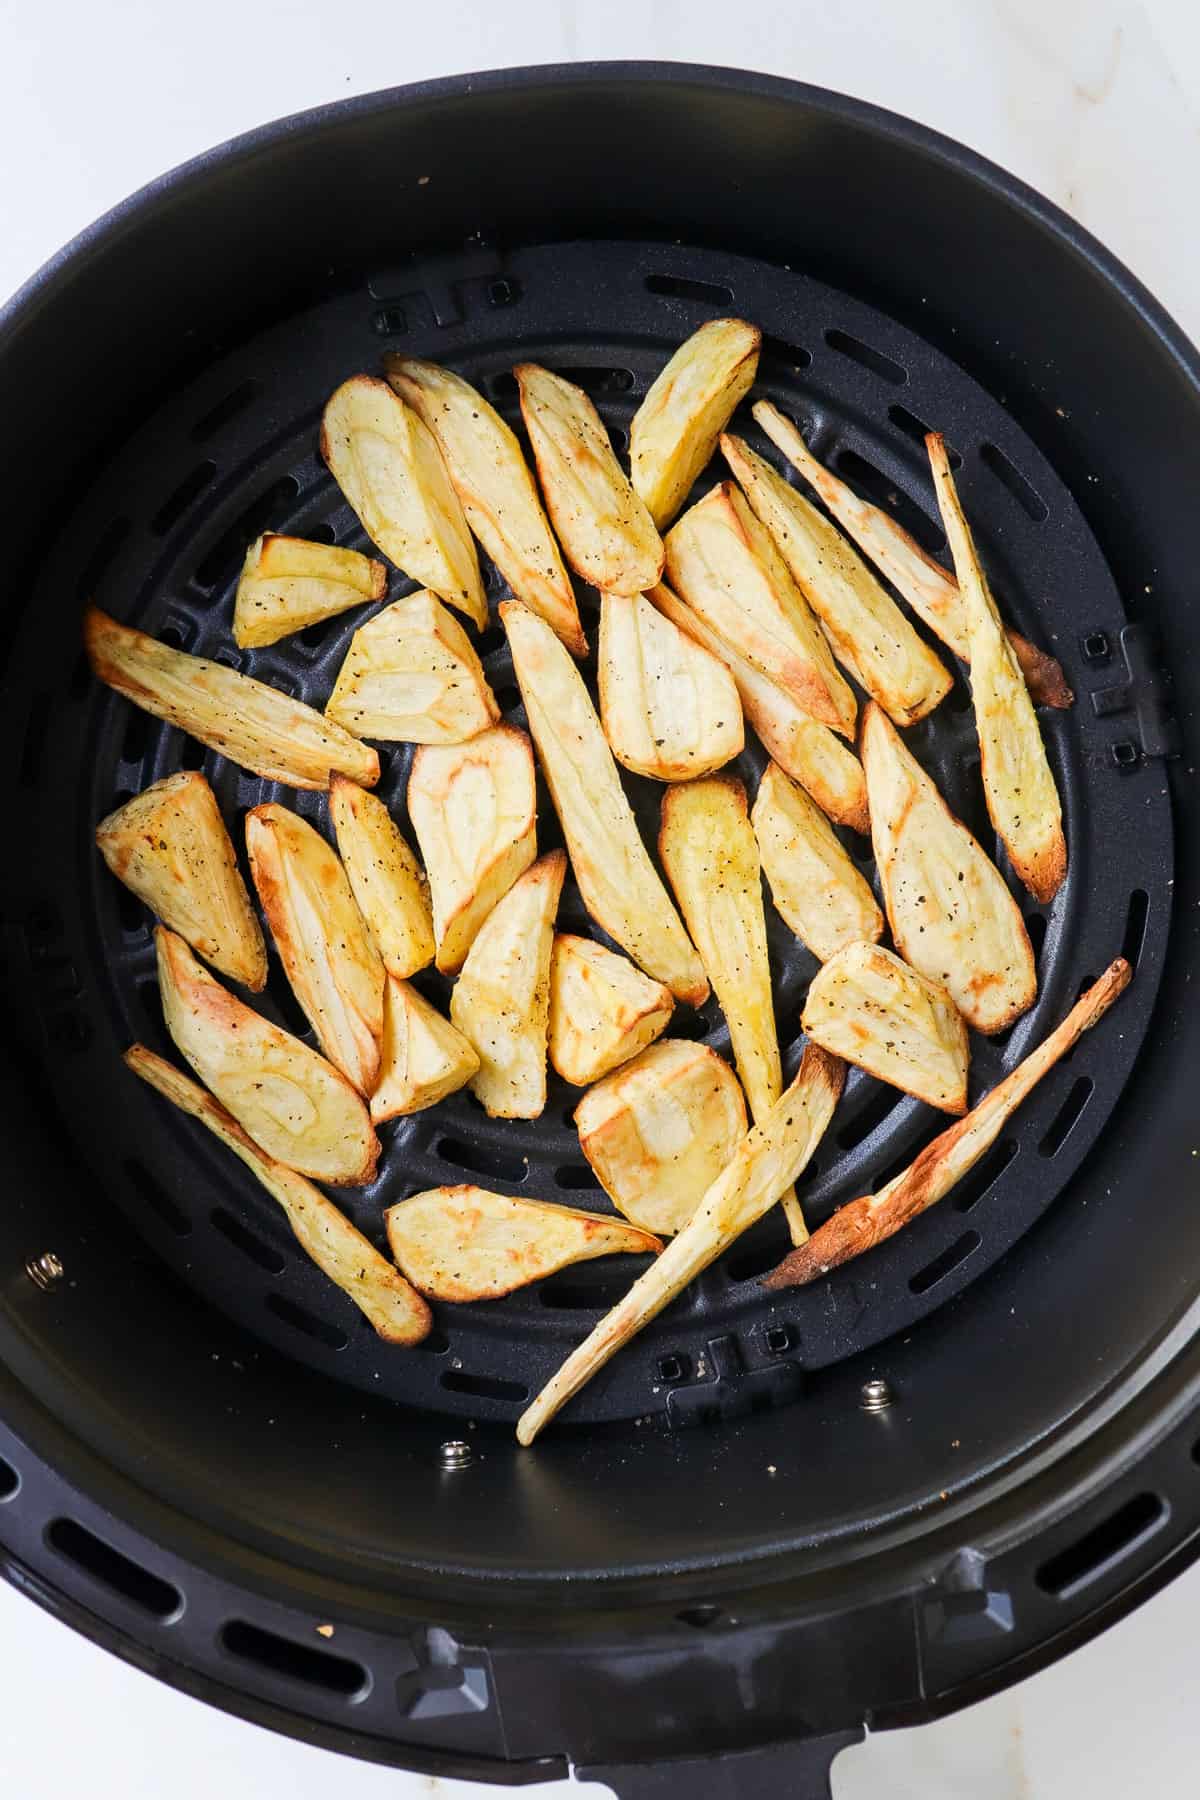 Air fried parsnips in basket.